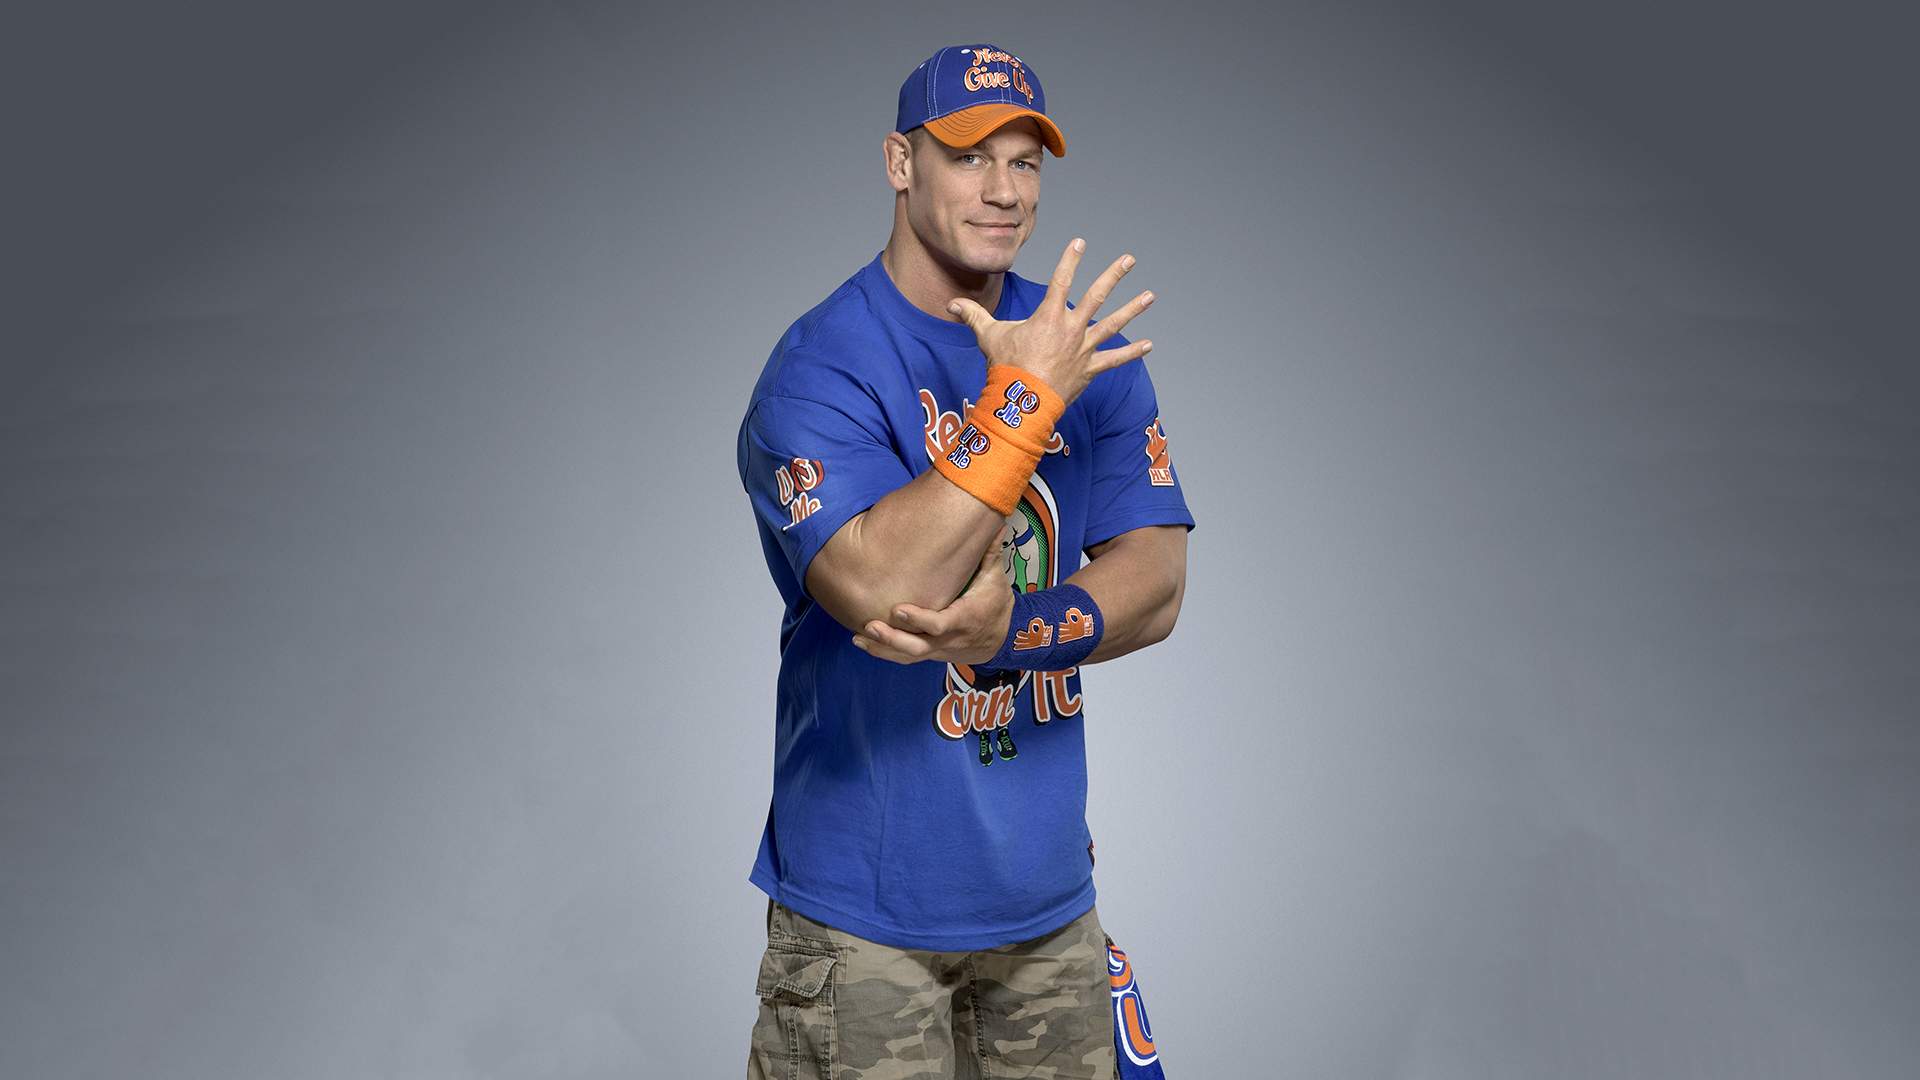 John Cena WWE Hollywood